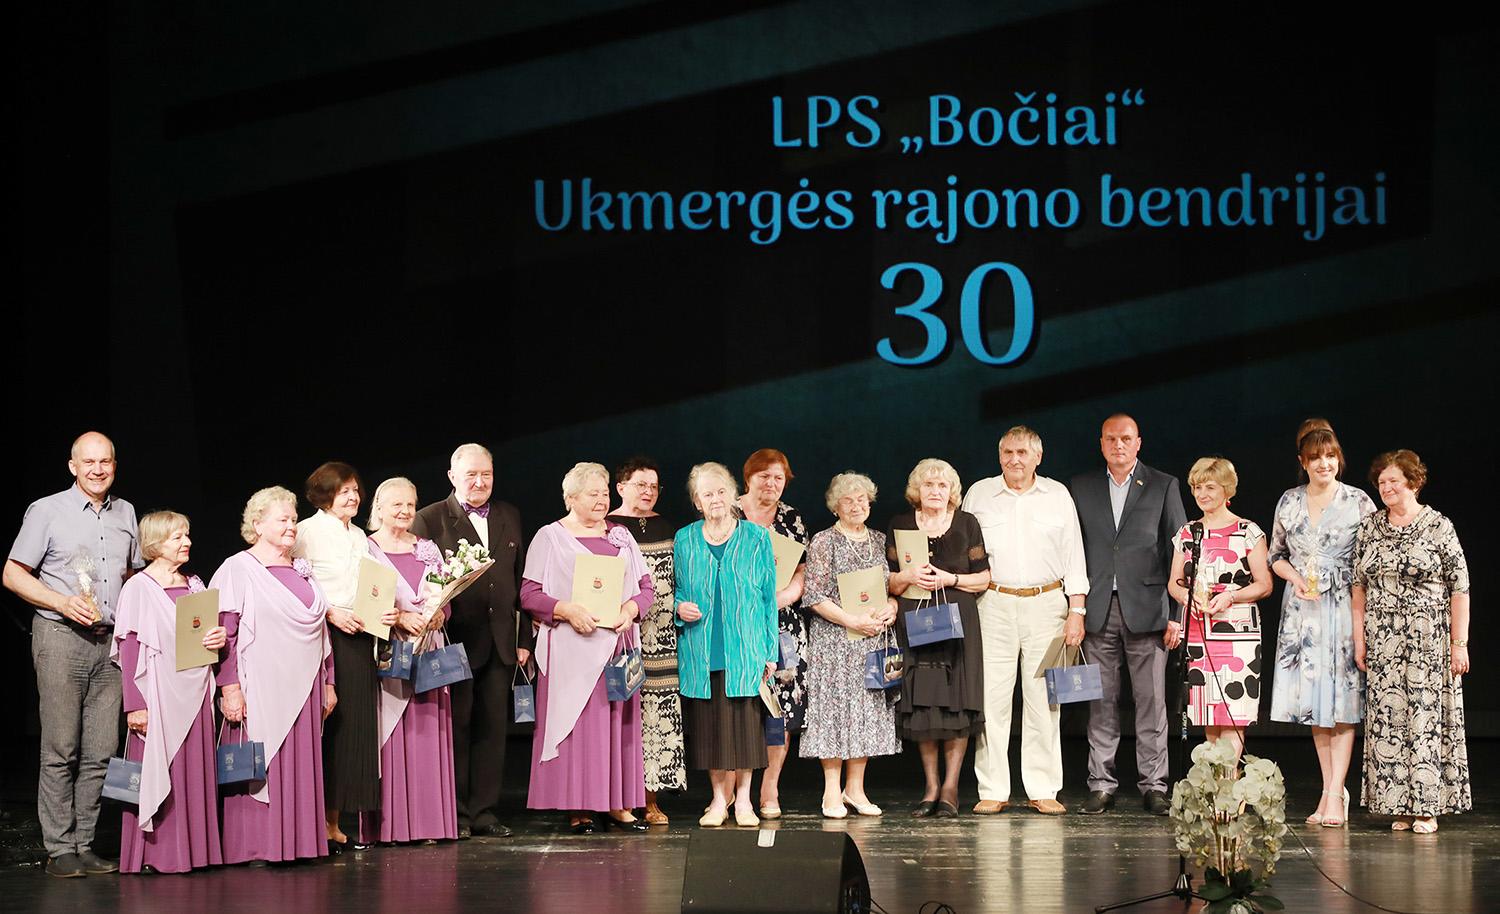 LPS Ukmergės rajono „Bočių“ bendrija šventė 30-metį / Aktyviausiems „Bočiams“ rajono vadovai įteikė padėkas. Dainiaus Vyto nuotr.